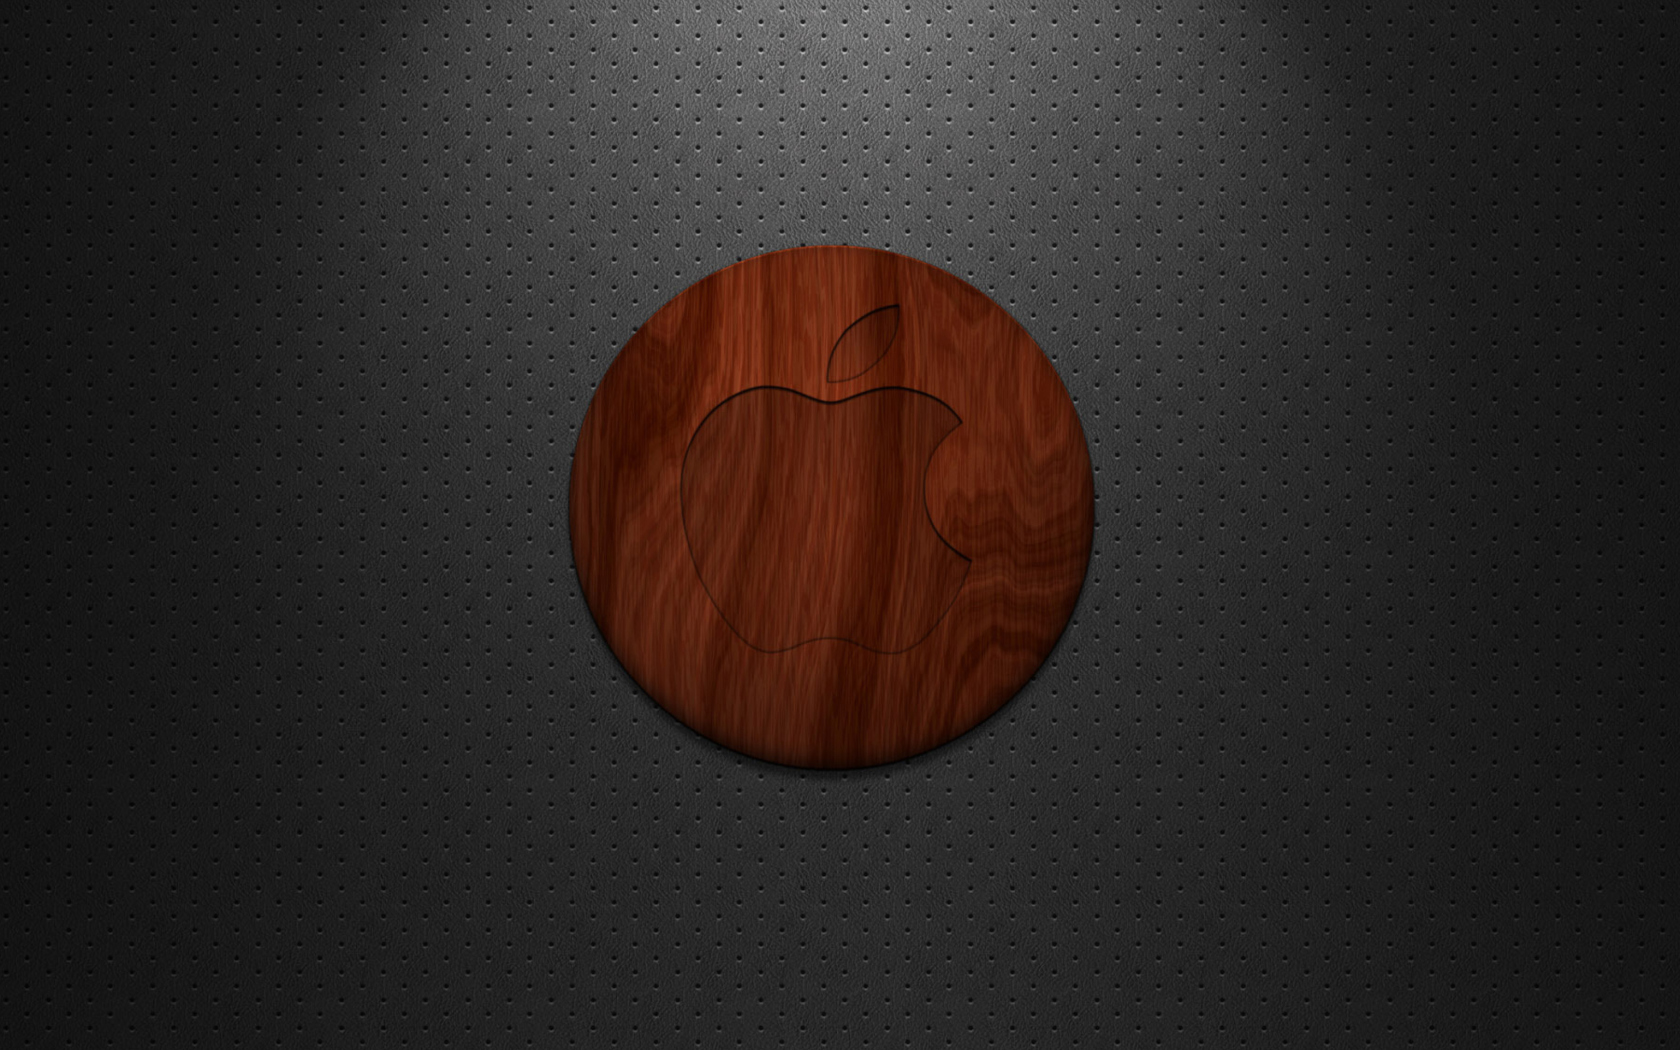 Das Wooden Apple Logo Wallpaper 1680x1050